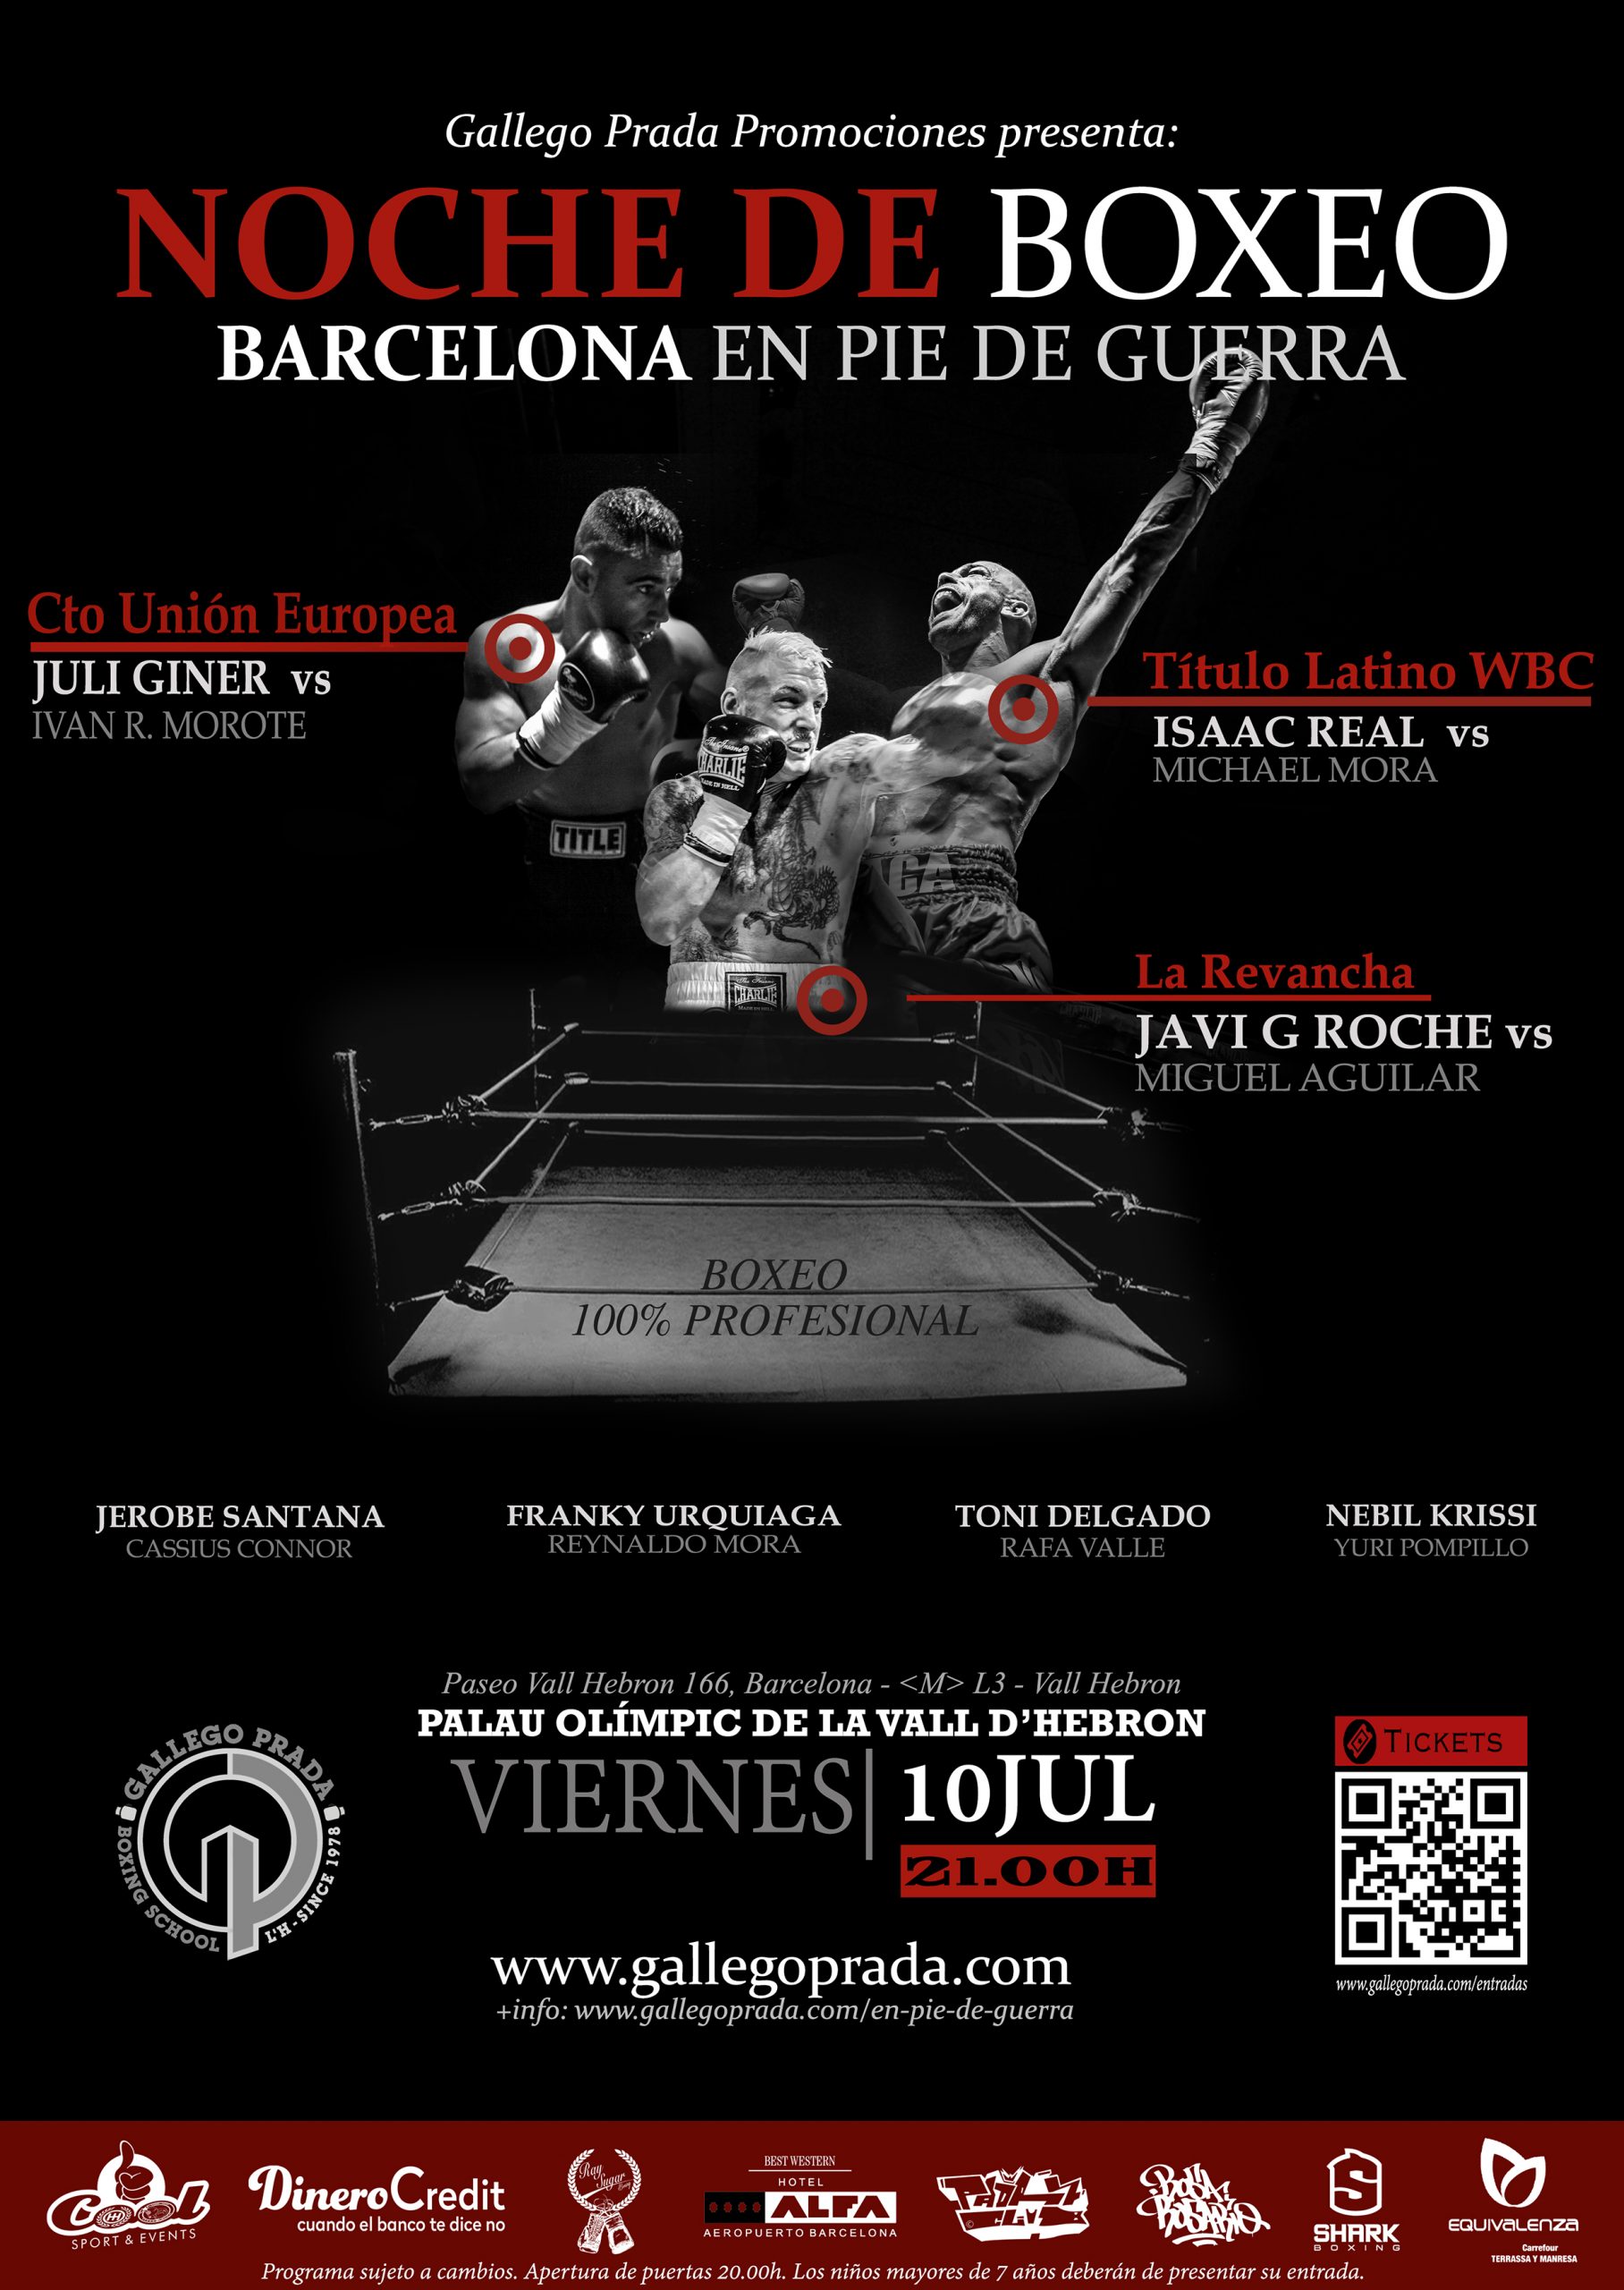 Cartel oficial de la velada de boxeo Barcelona en pie de guerra